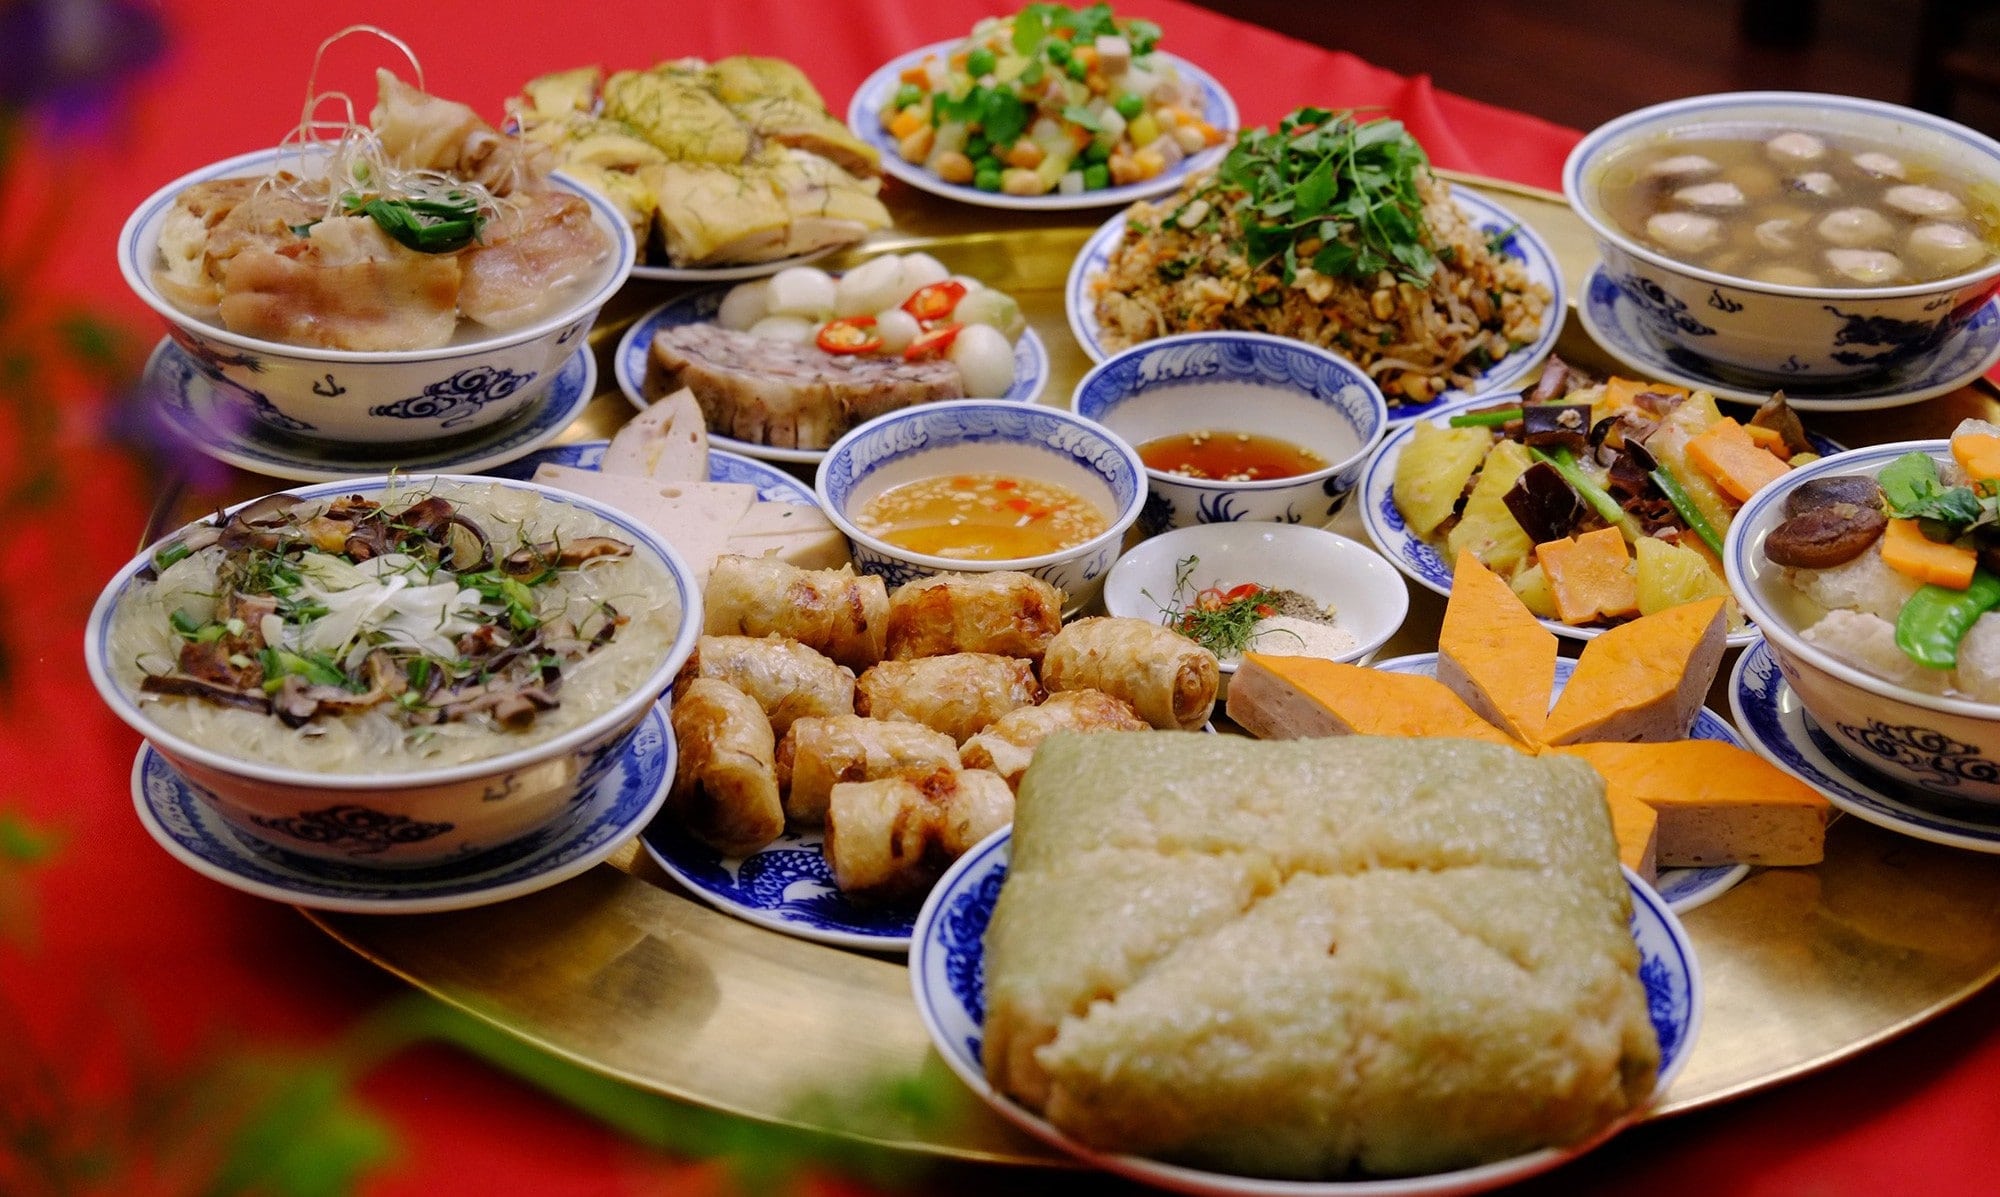 Món ăn không thể thiếu trong mâm cỗ Tết, giúp Tết thêm tròn vị của người Việt